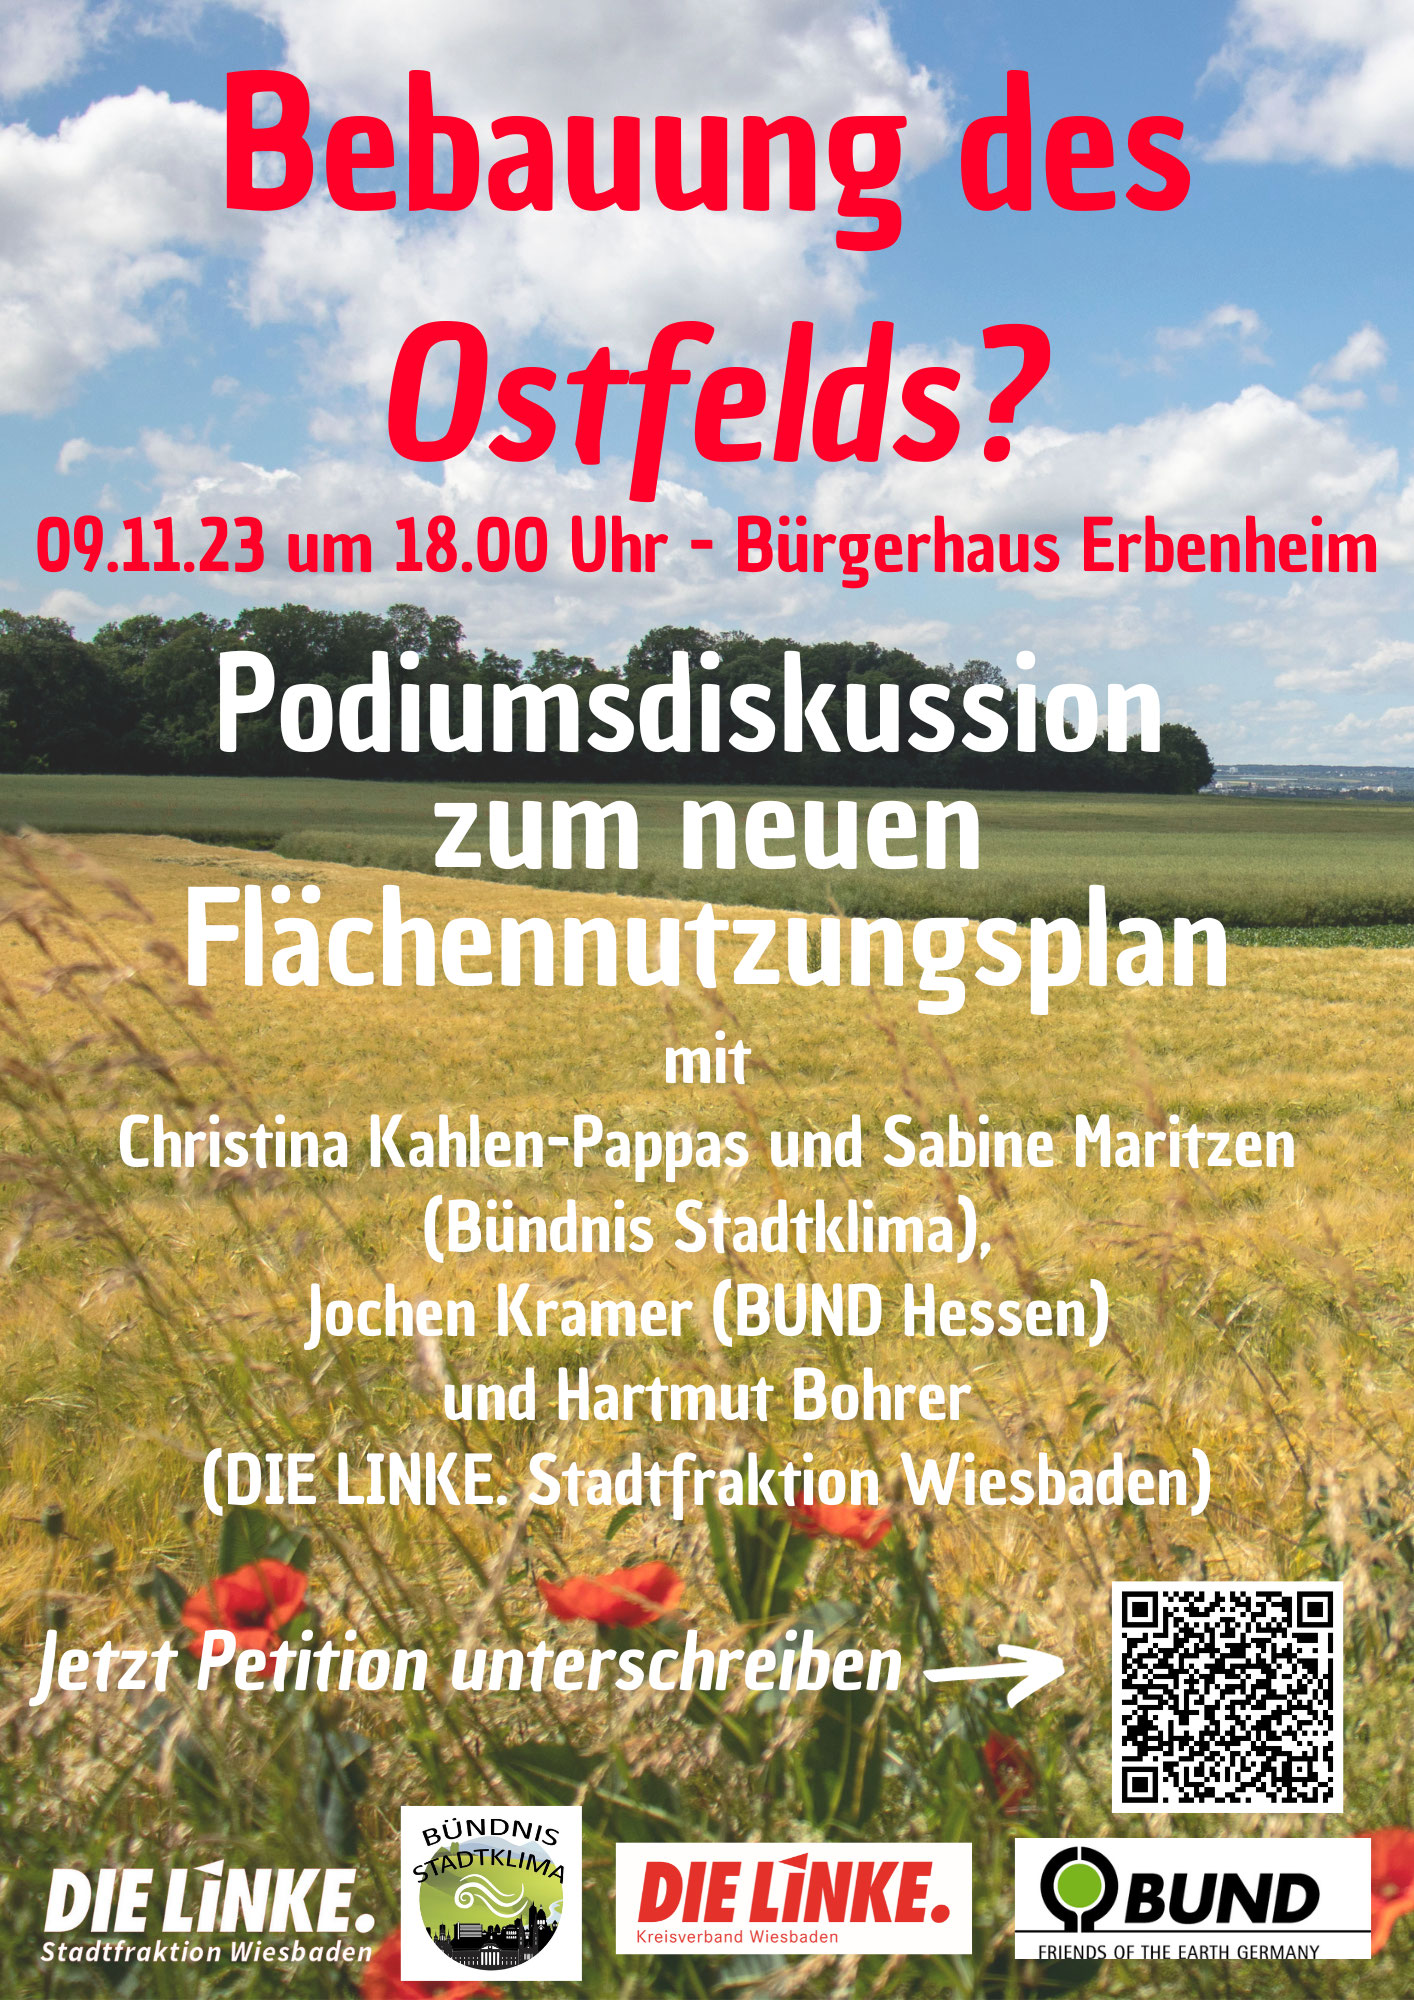 Podiumsdiskussion zum Flächennutzungplan und zum Ostfeld am 9. November 2023 in Erbenheim